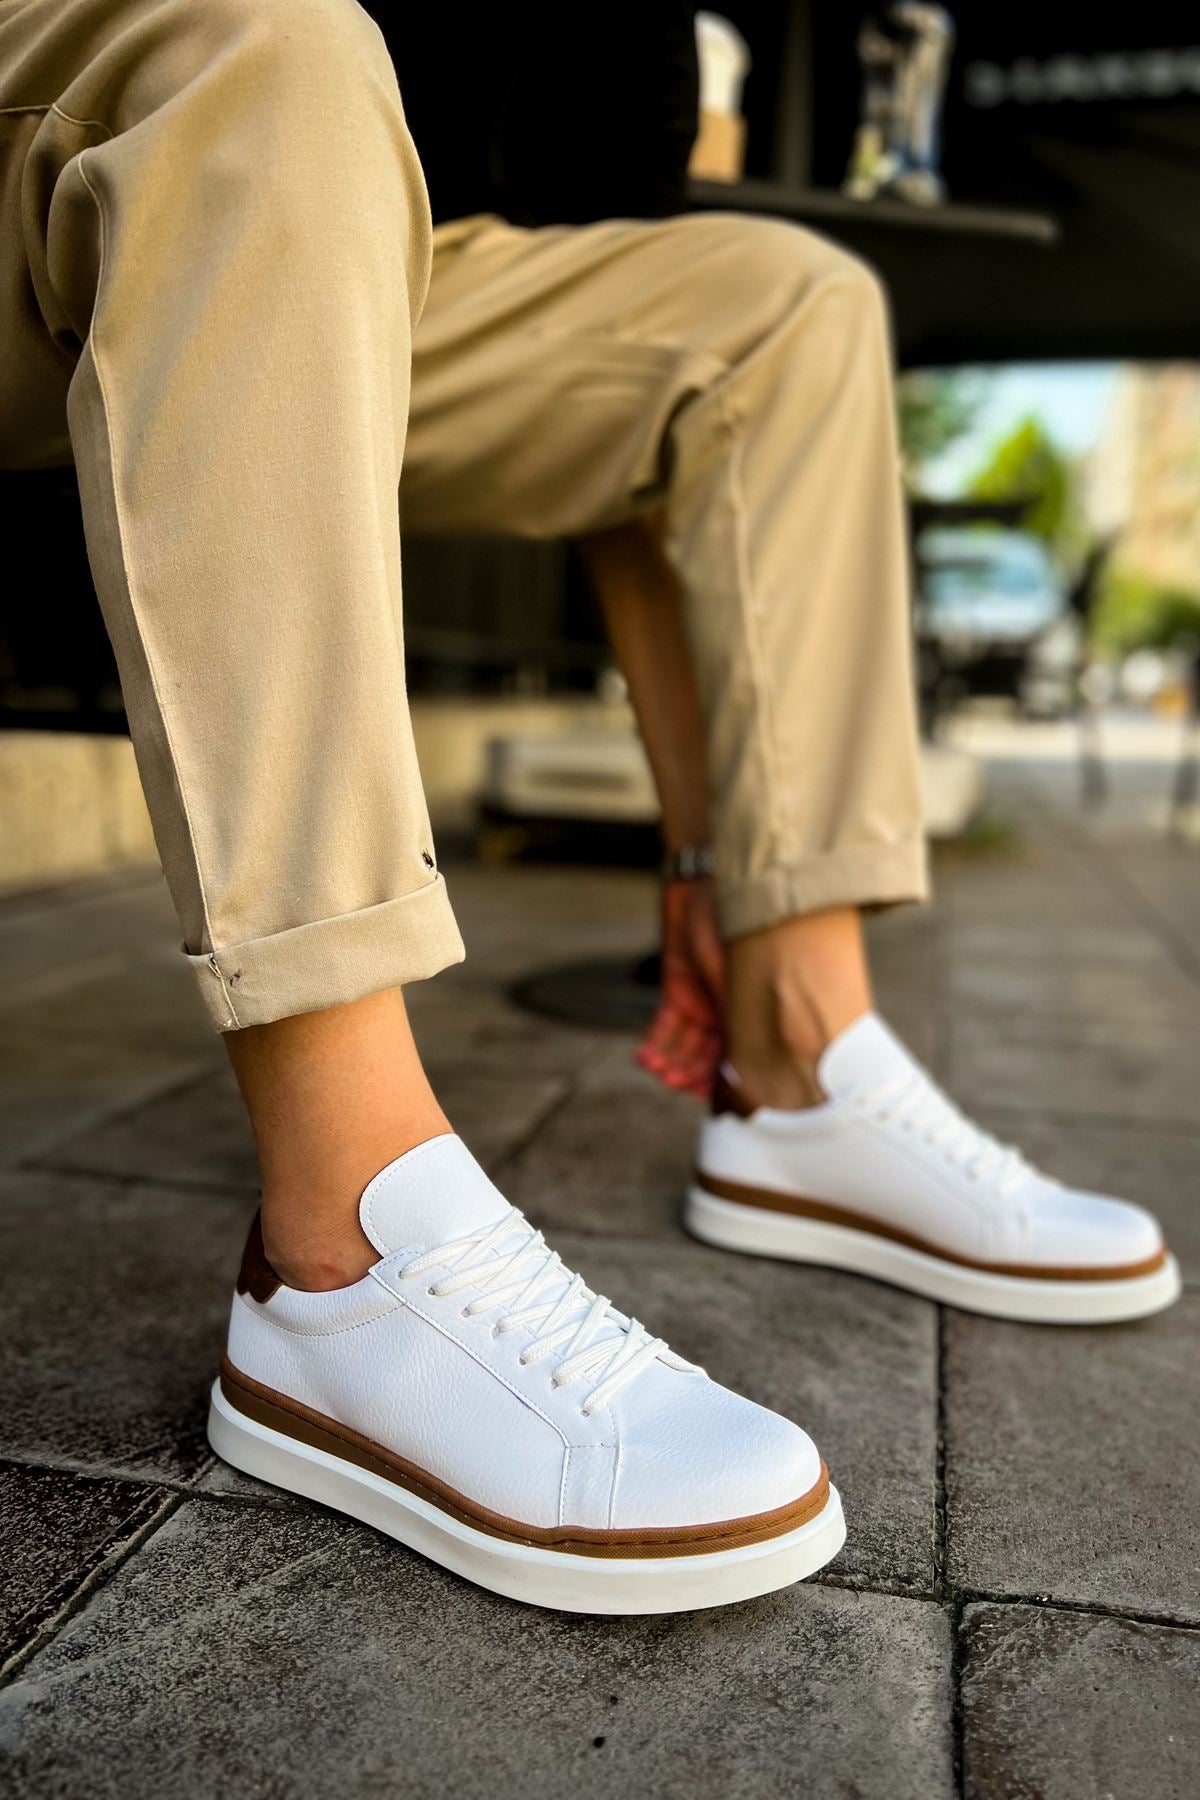 CH979 Santoni GBT Sport Men's Sneakers Shoes WHITE/TAGAN - STREETMODE™